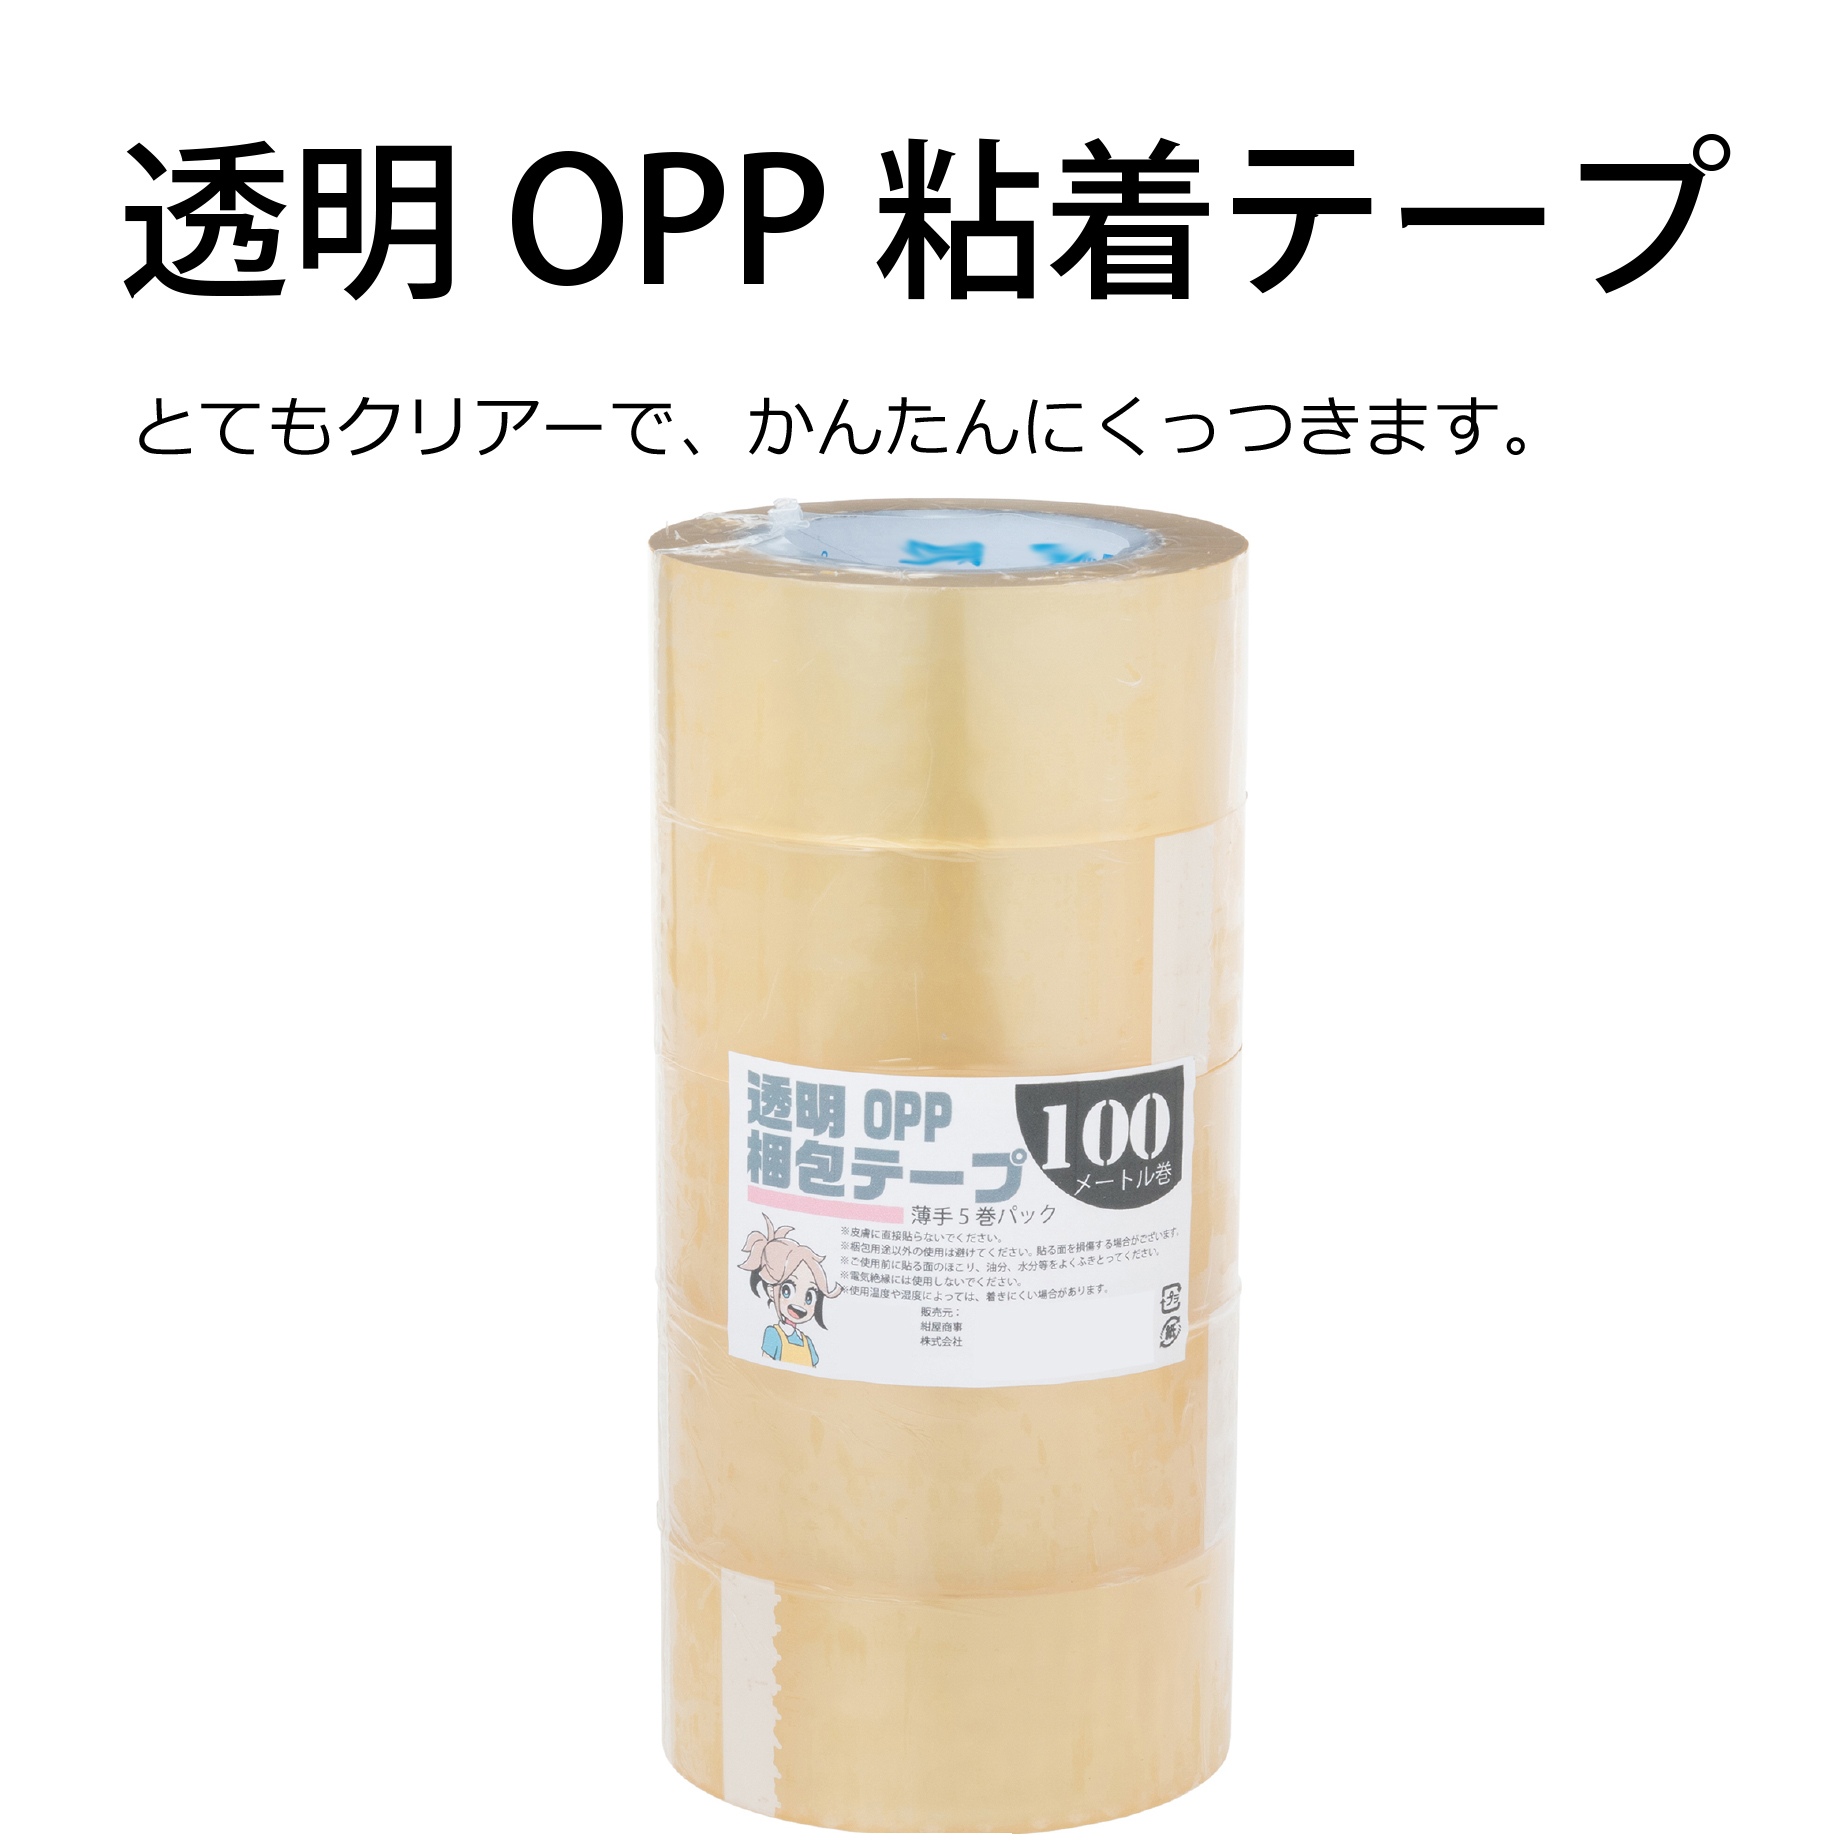 透明OPP粘着テープ | 紺屋商事株式会社 公式ホームページ